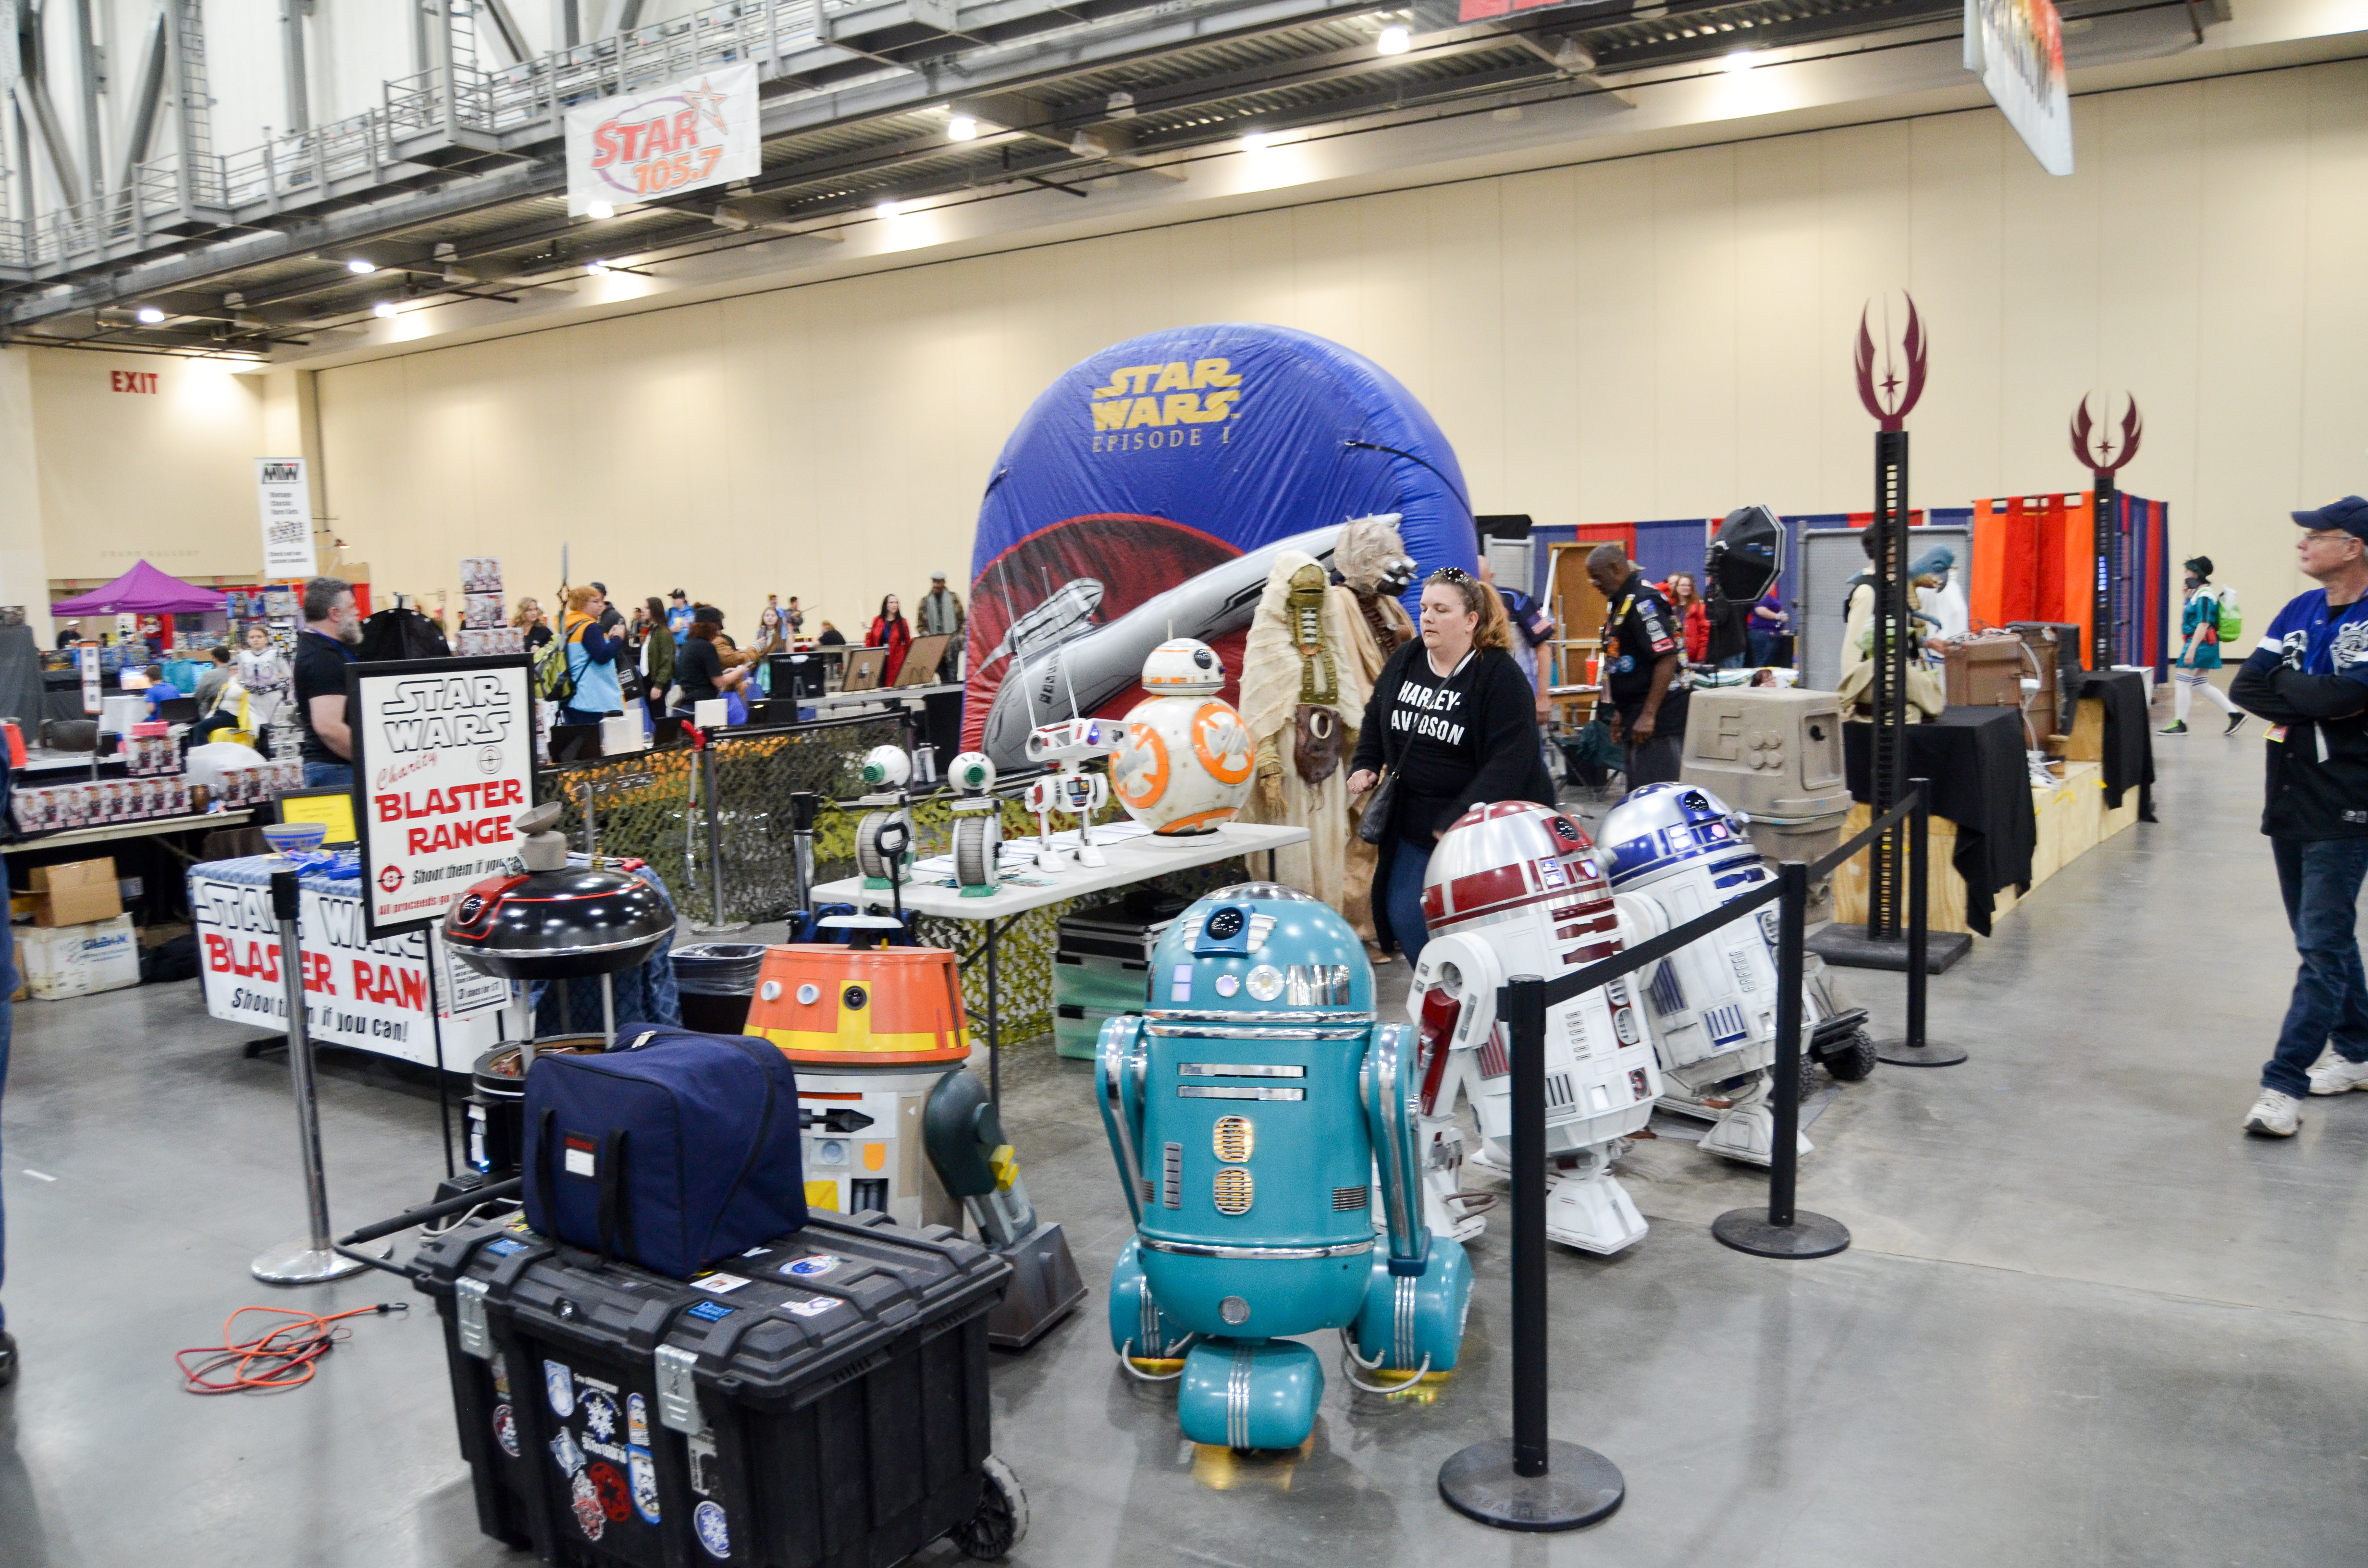 Grand Rapids Comic Con 2019 Star Wars Droids 501st Legion